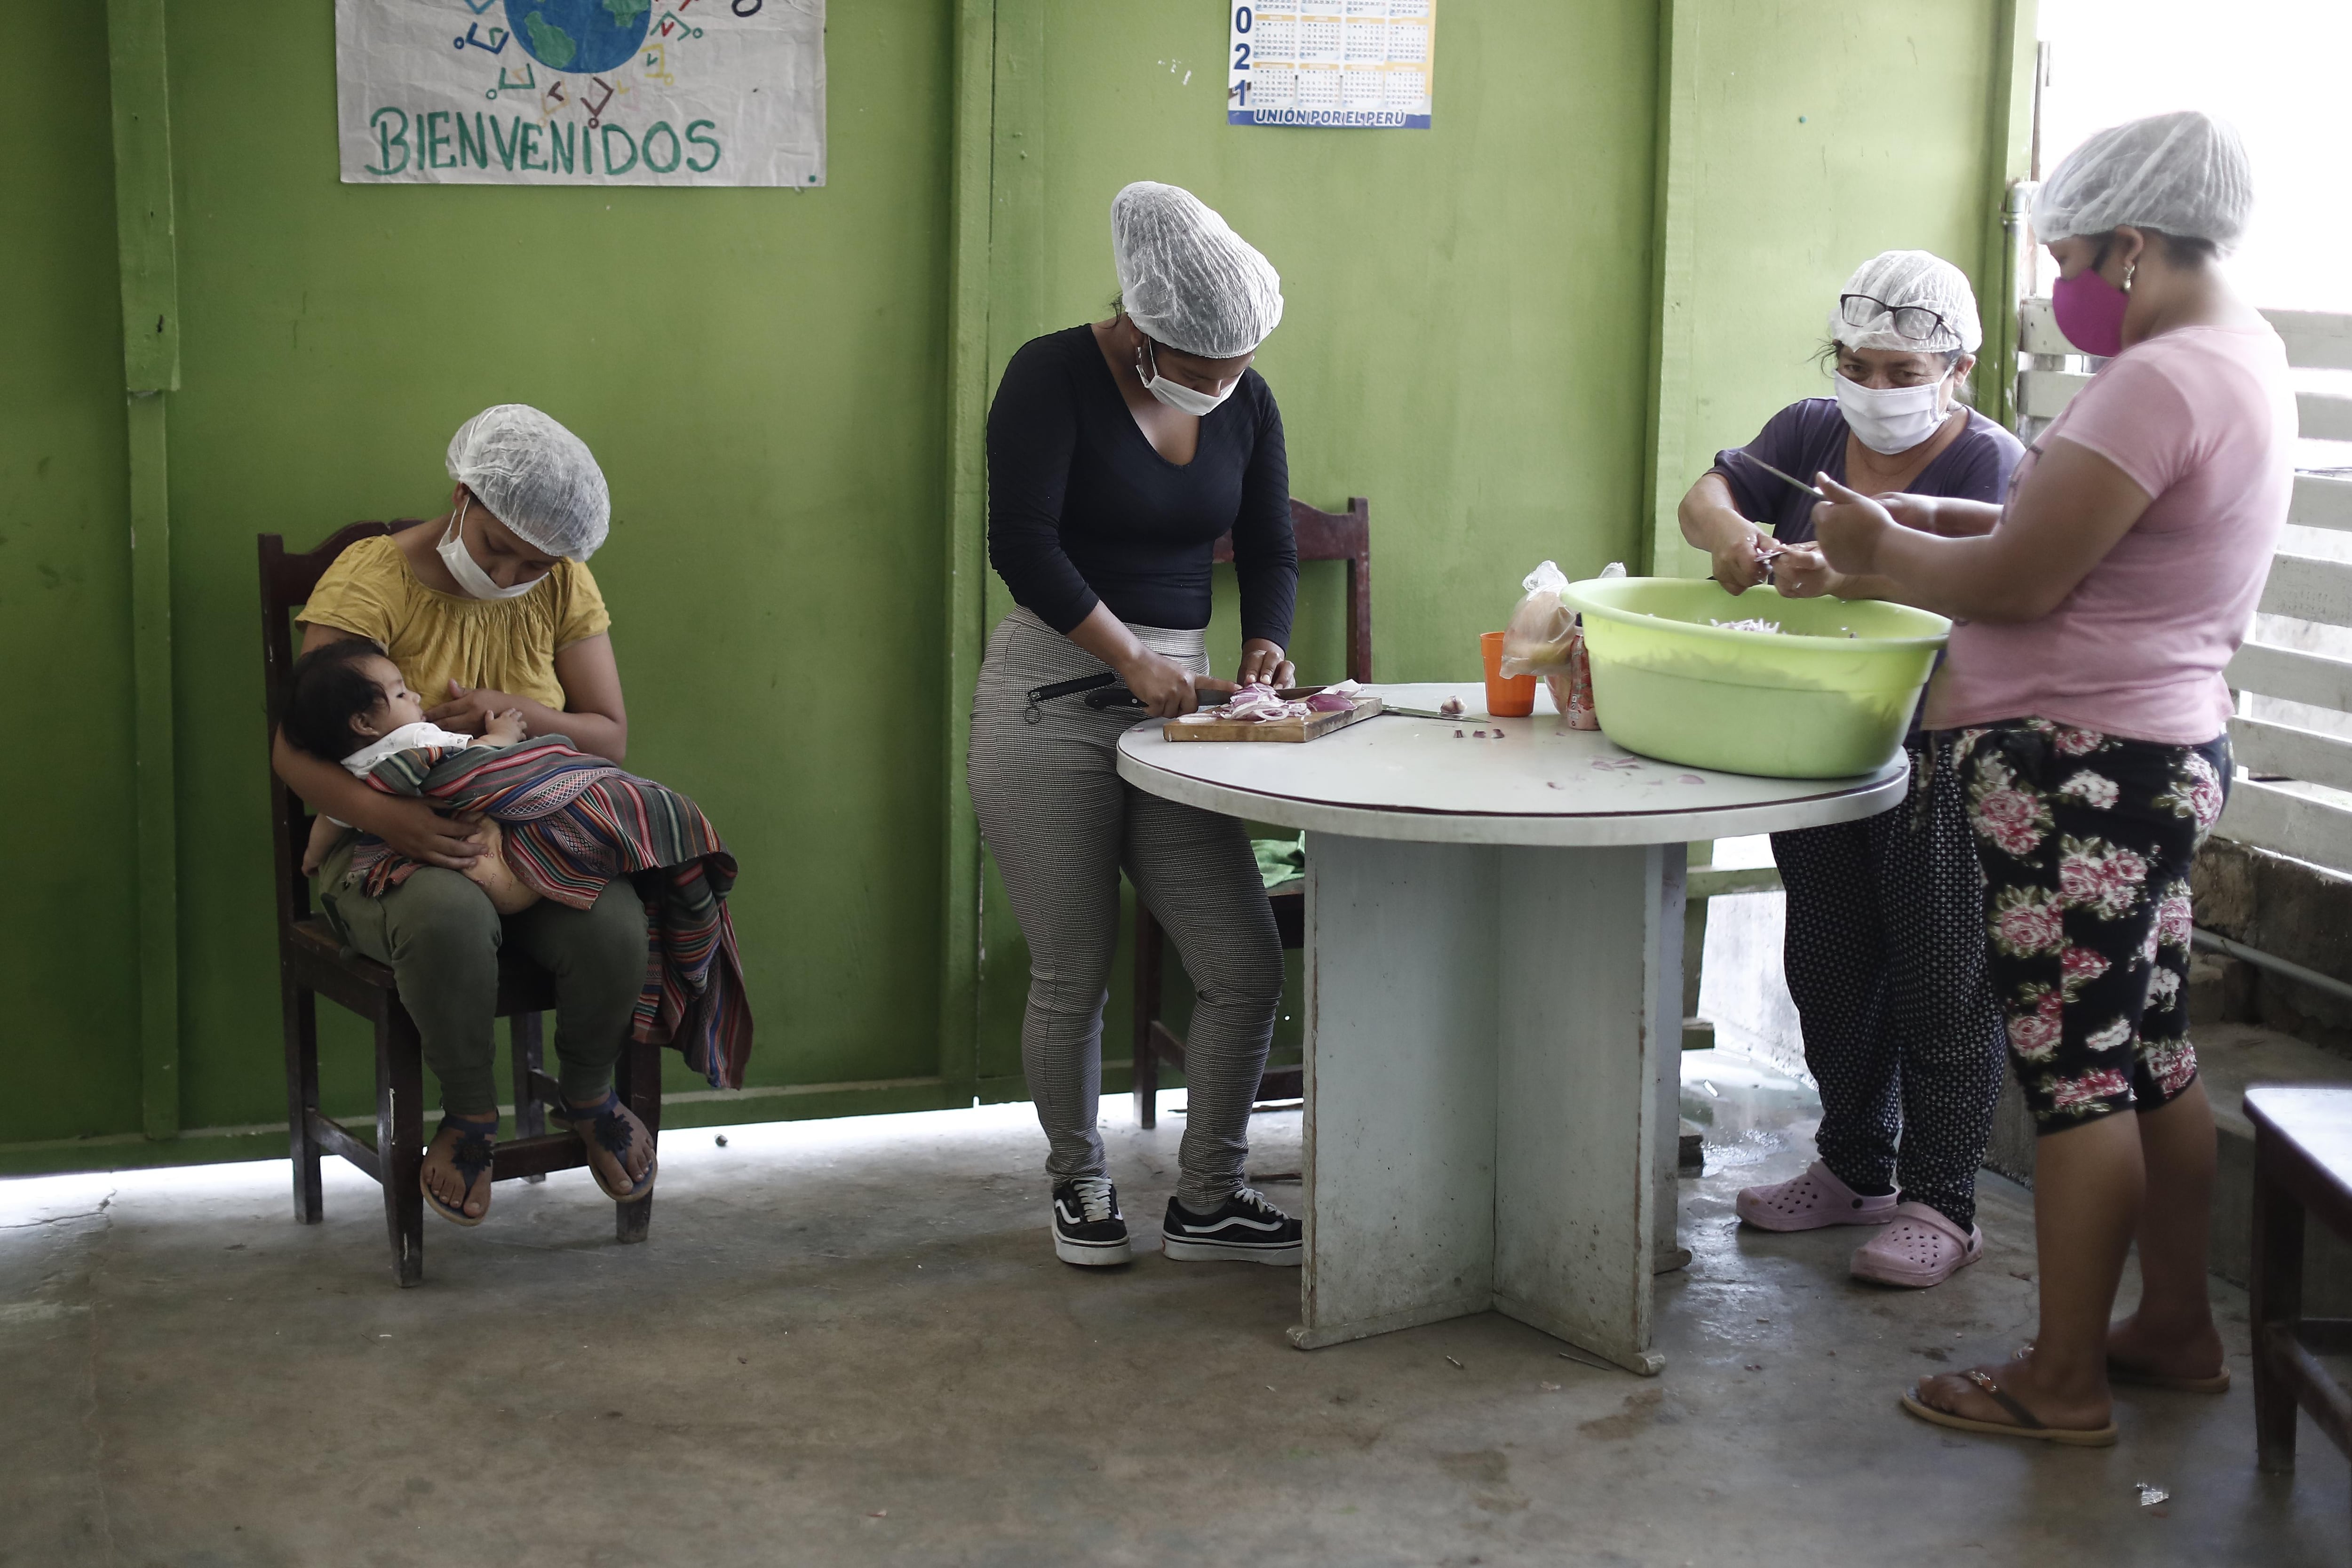 Se estima que en Lima Metropolitana existen más de 900 ollas comunes instaladas en 29 distritos, según reportes de diciembre del 2020, publicados por la Mesa de Concertación para la Lucha contra la Pobreza. (Foto: César Campos)